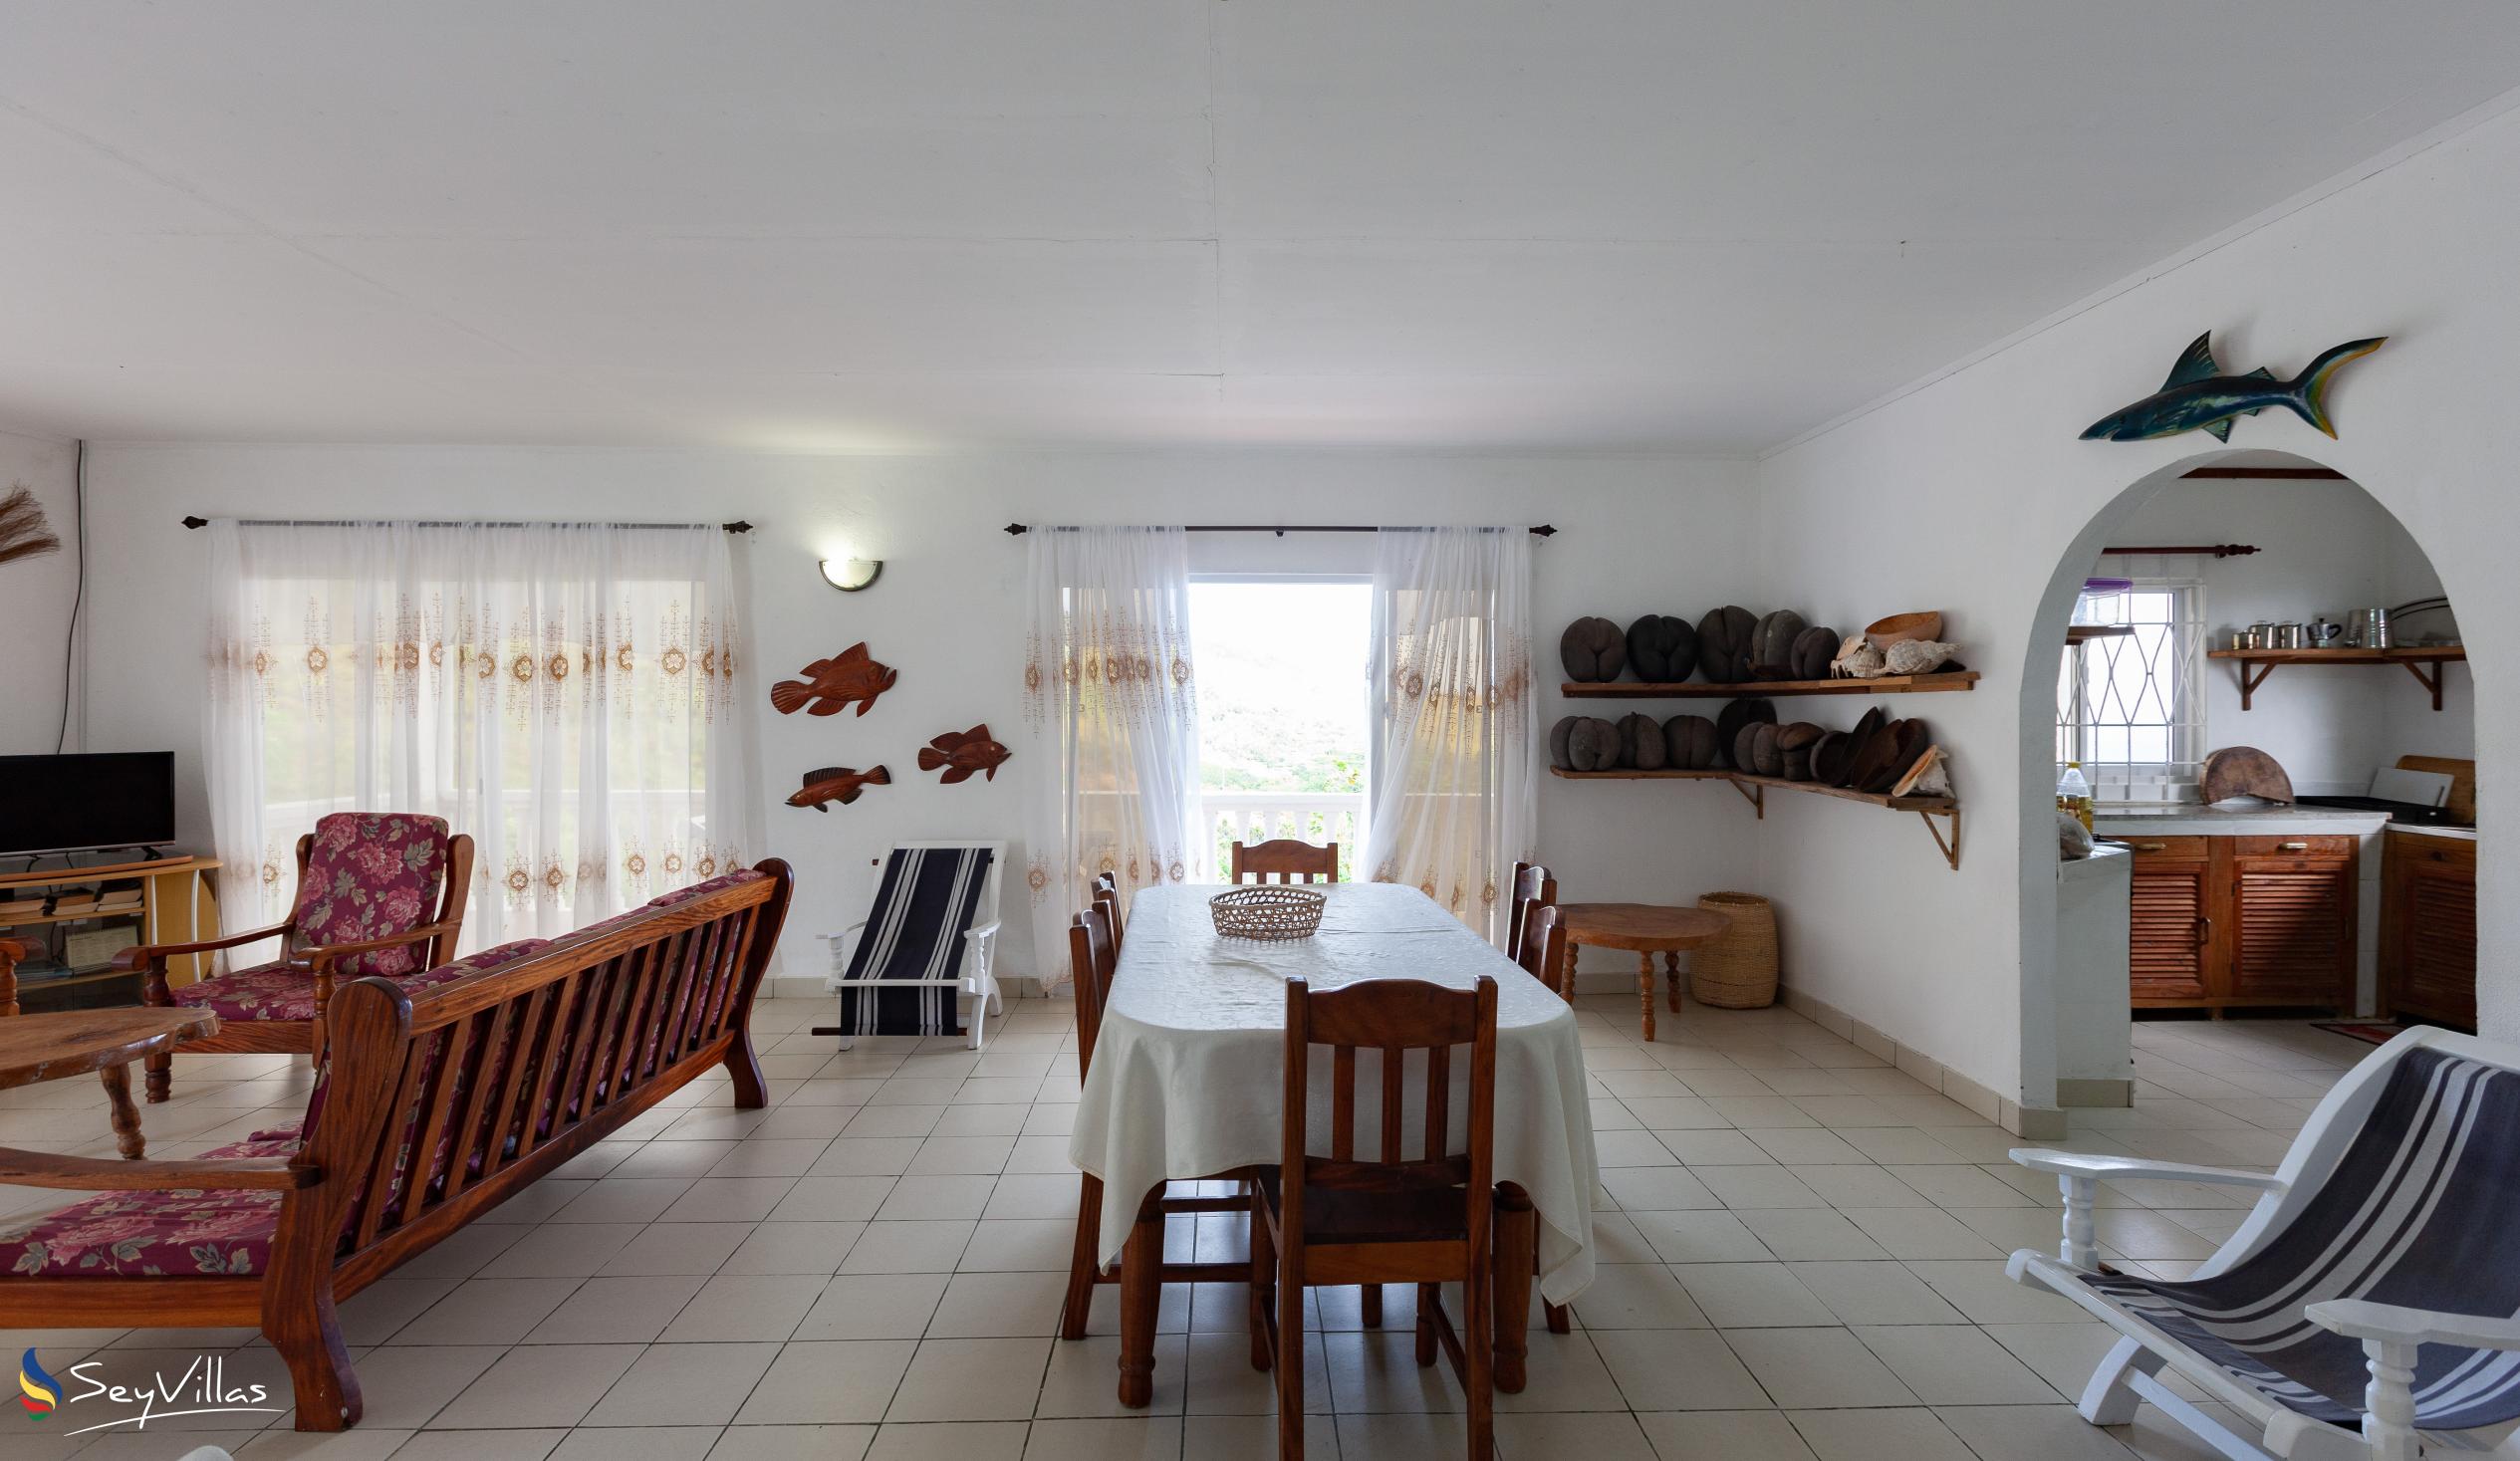 Foto 31: Maison du Soleil - Innenbereich - Praslin (Seychellen)